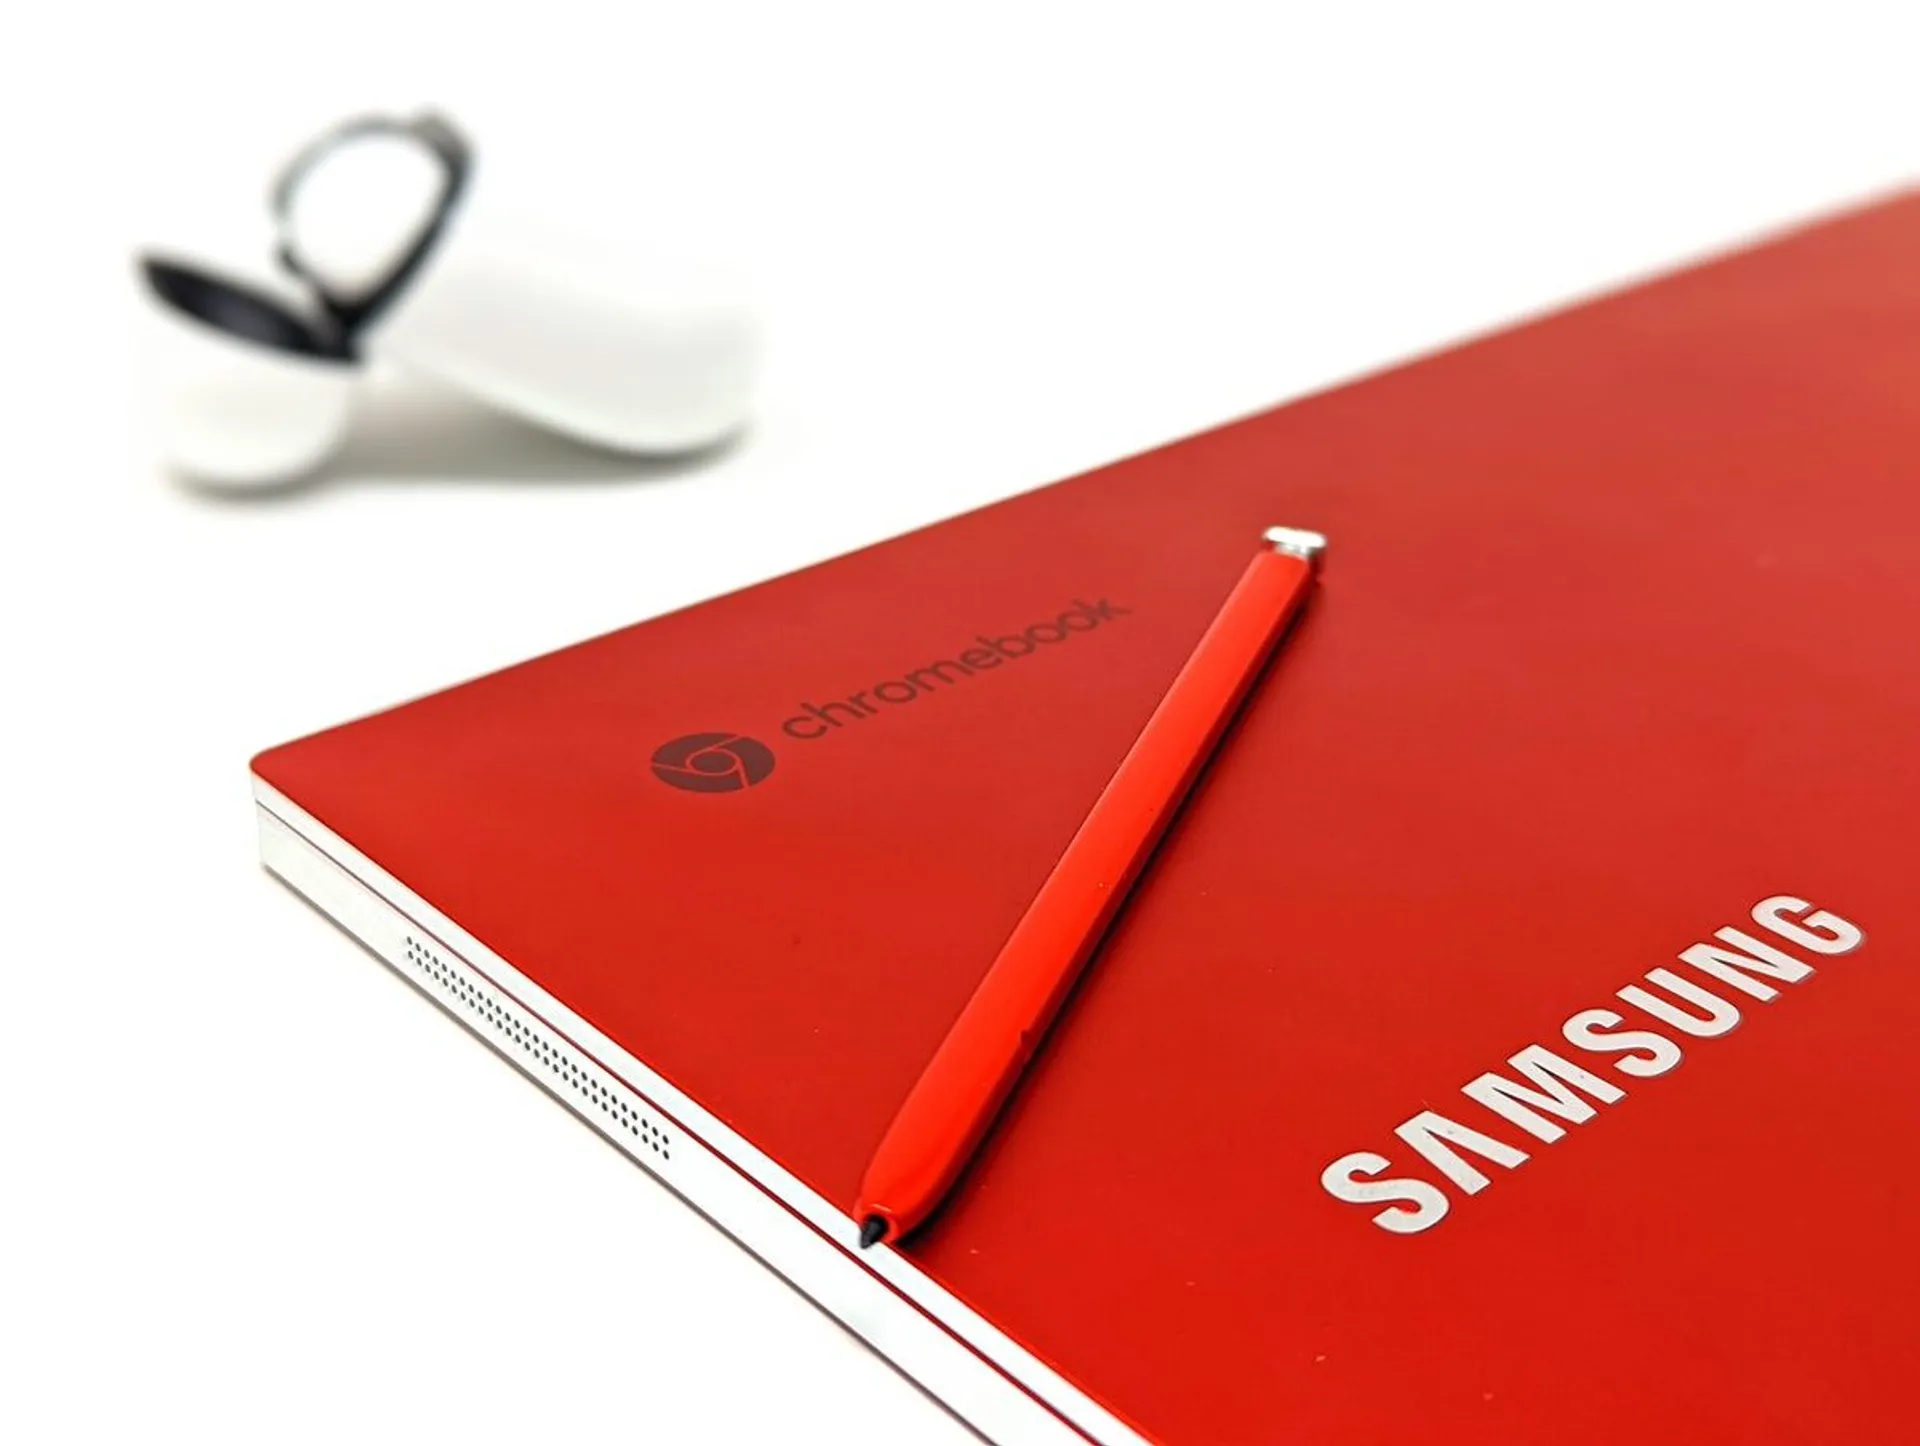 Saldi estivi Samsung: fino al 50% di sconto sui prodotti elettronici